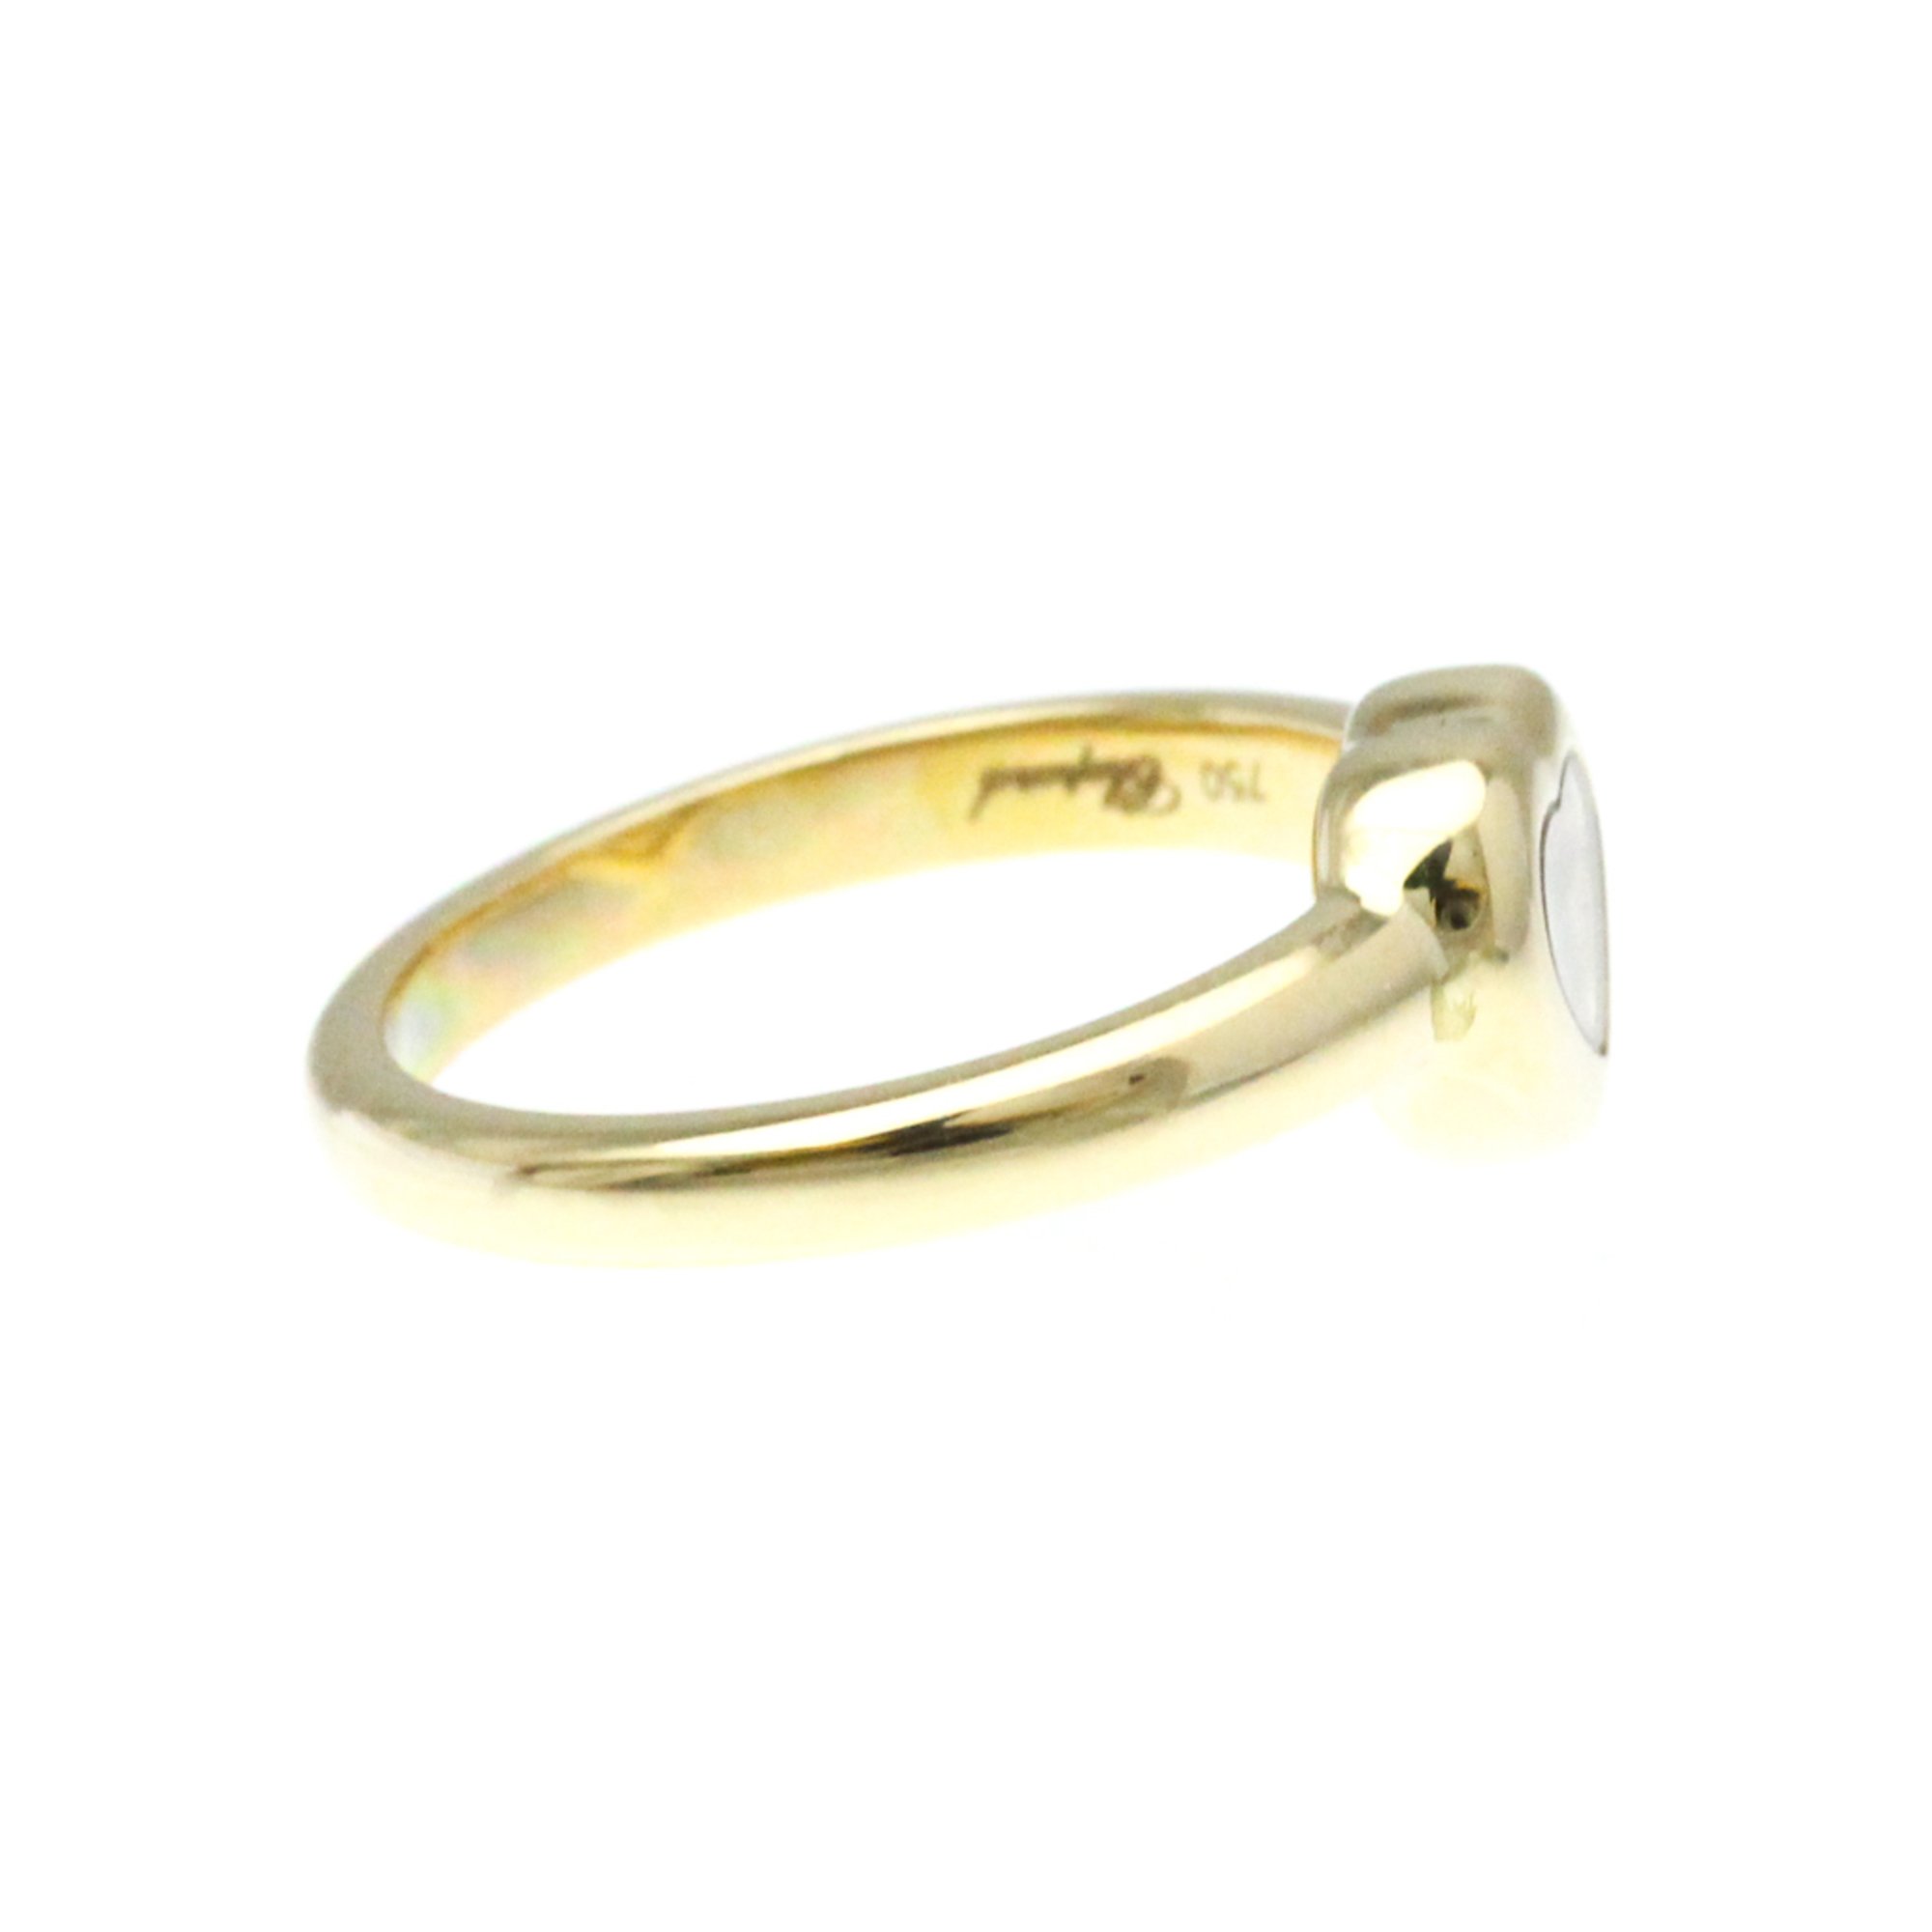 Chopard Happy Diamonds 82/4854 Yellow Gold (18K) Fashion Diamond Band Ring Gold